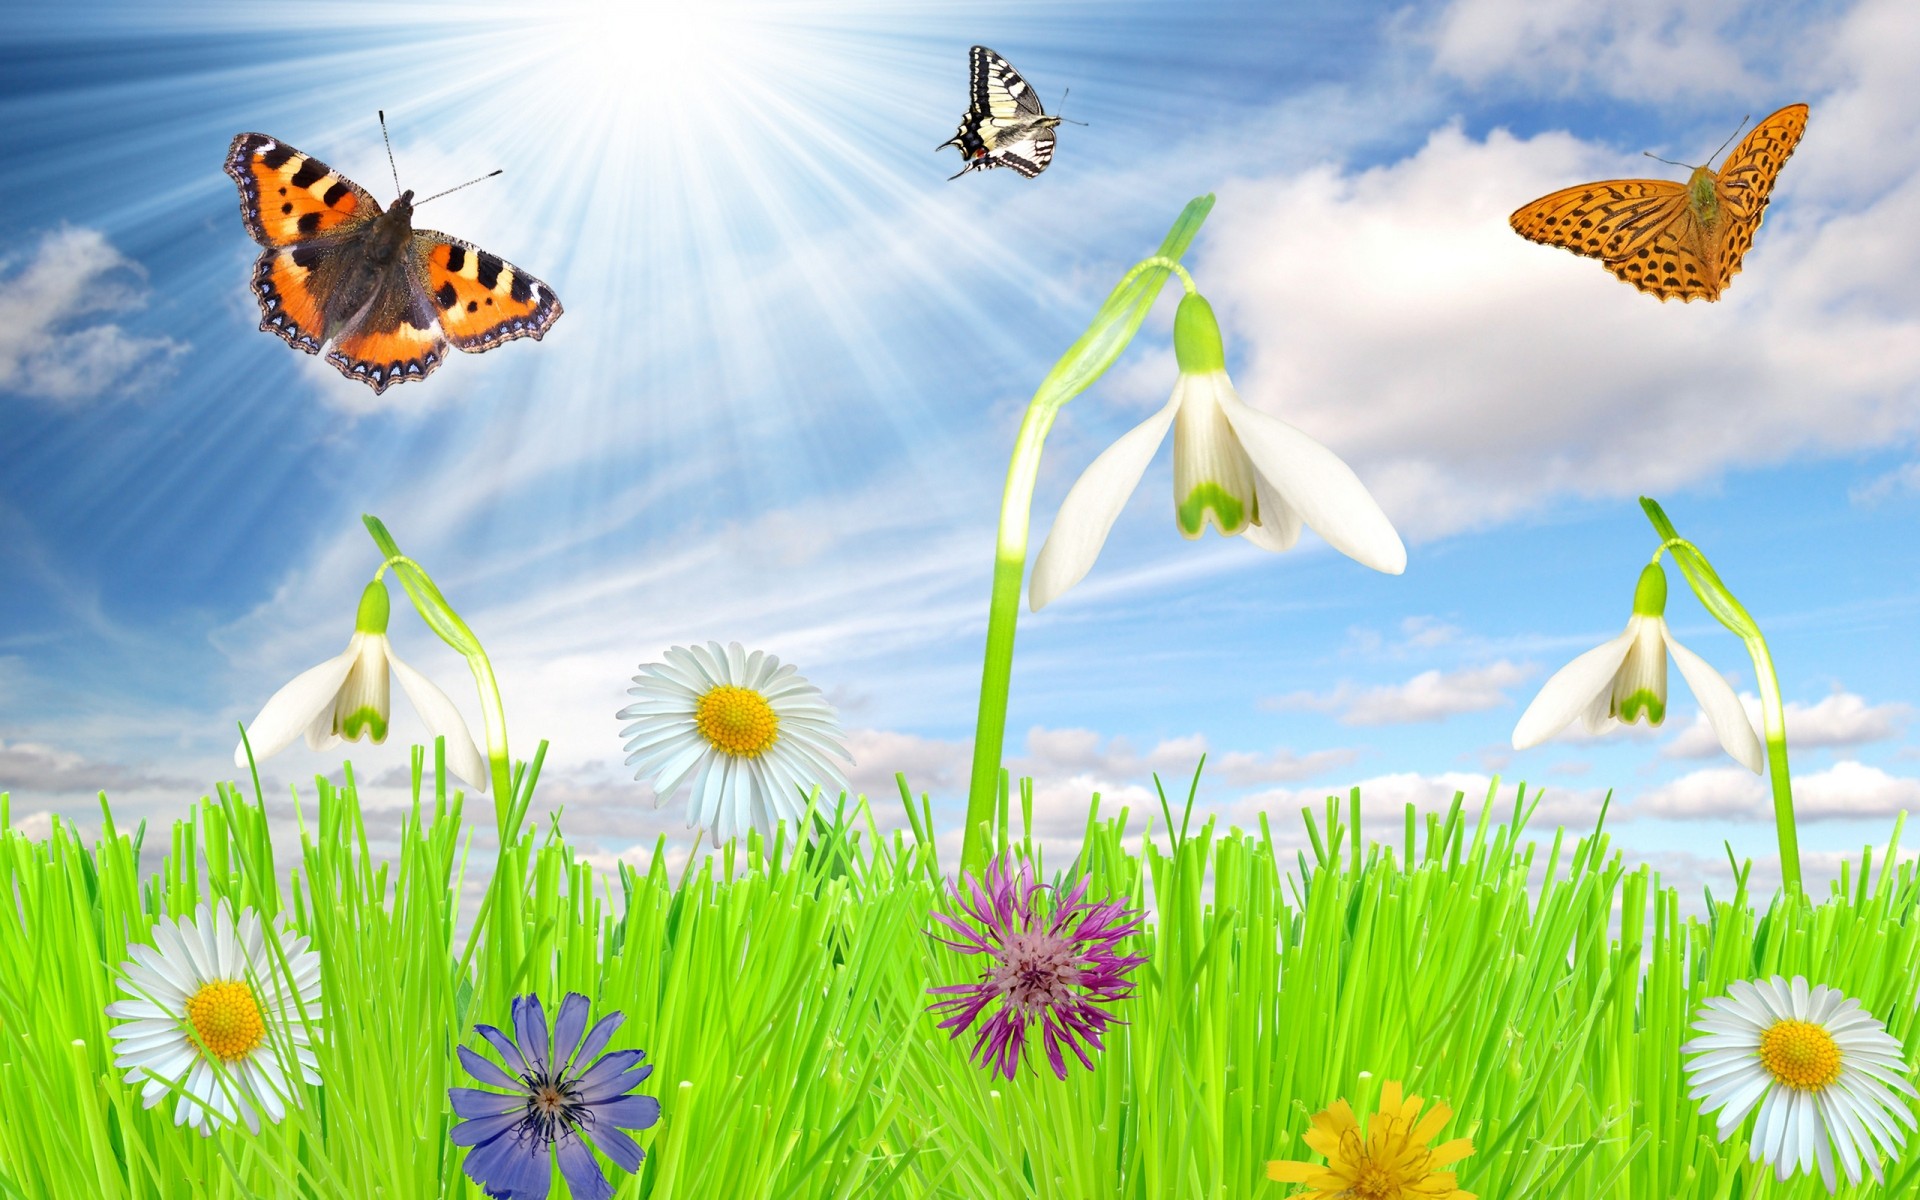 весна бабочка природа насекомое трава цветок лето сенокос сад солнце хорошую погоду на открытом воздухе яркий флора среды поле цвет бабочки цветы